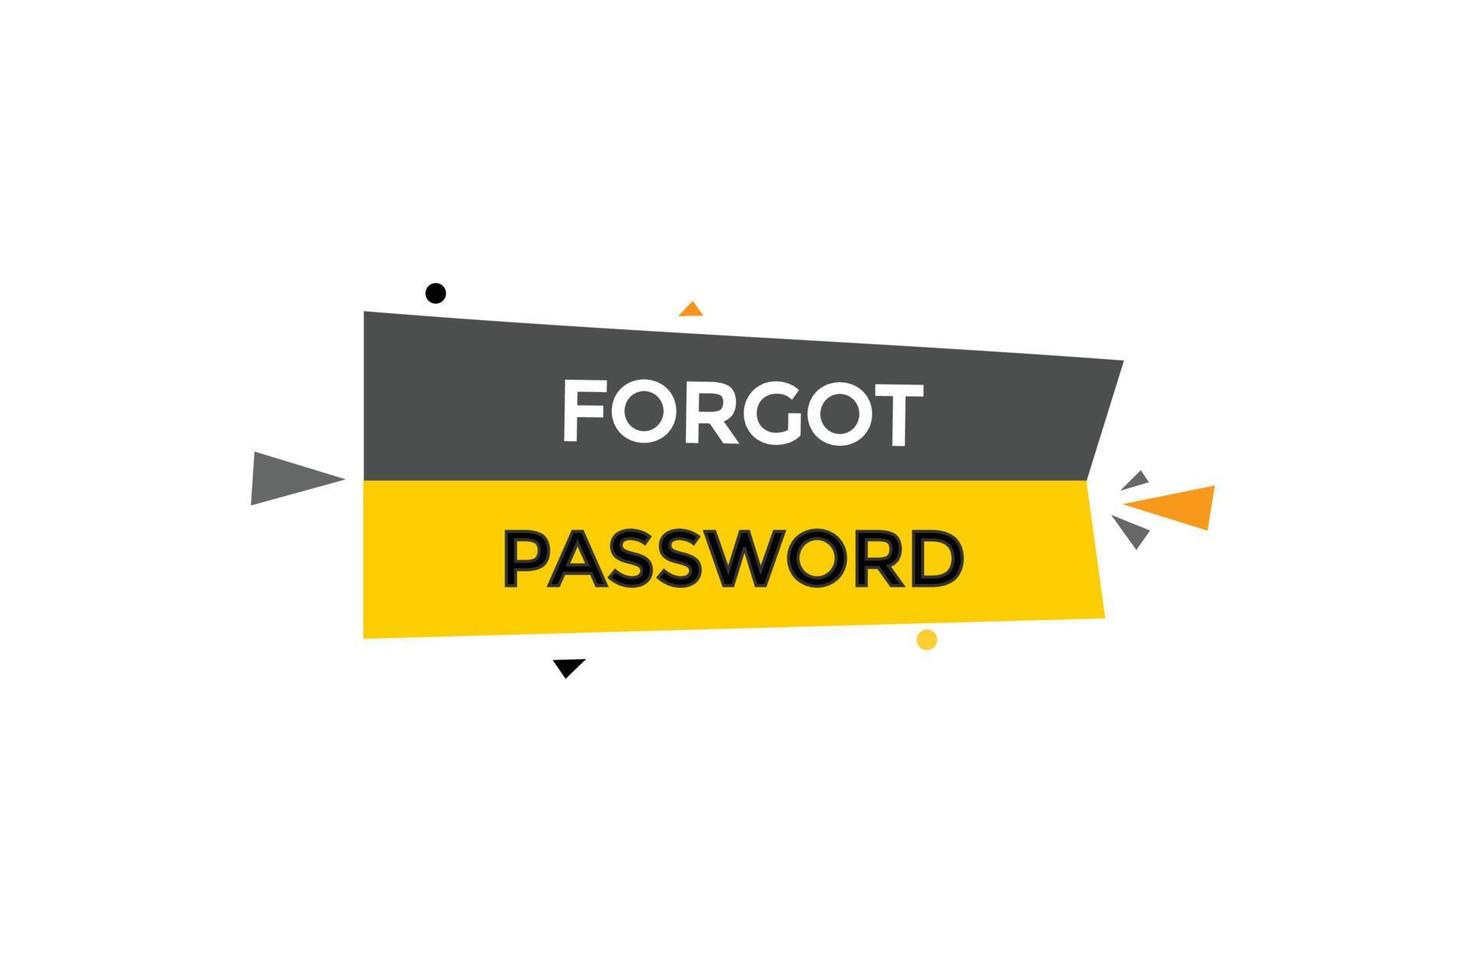 vergessen Passwort vectors.sign Etikette Blase Rede vergessen Passwort vektor